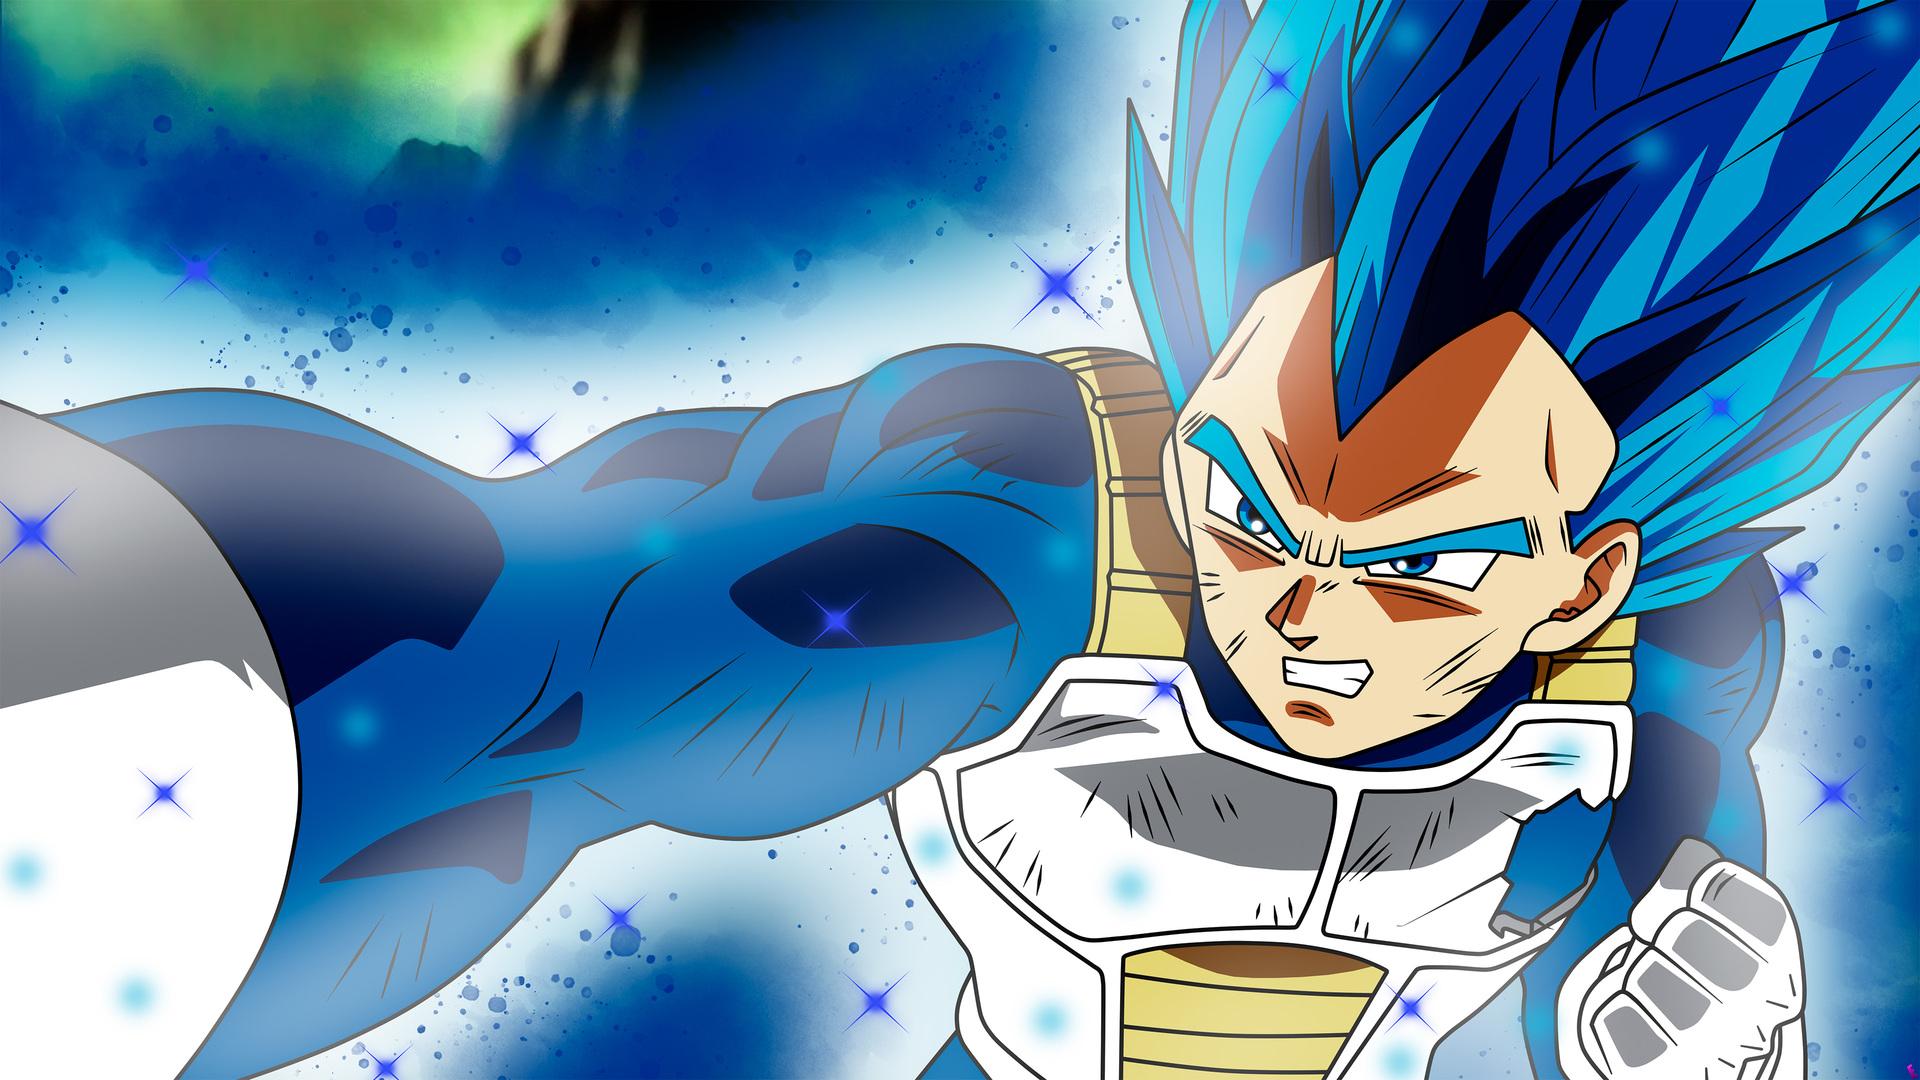 Anime Dragon Ball Super Vegeta SSJ Blue Full Power